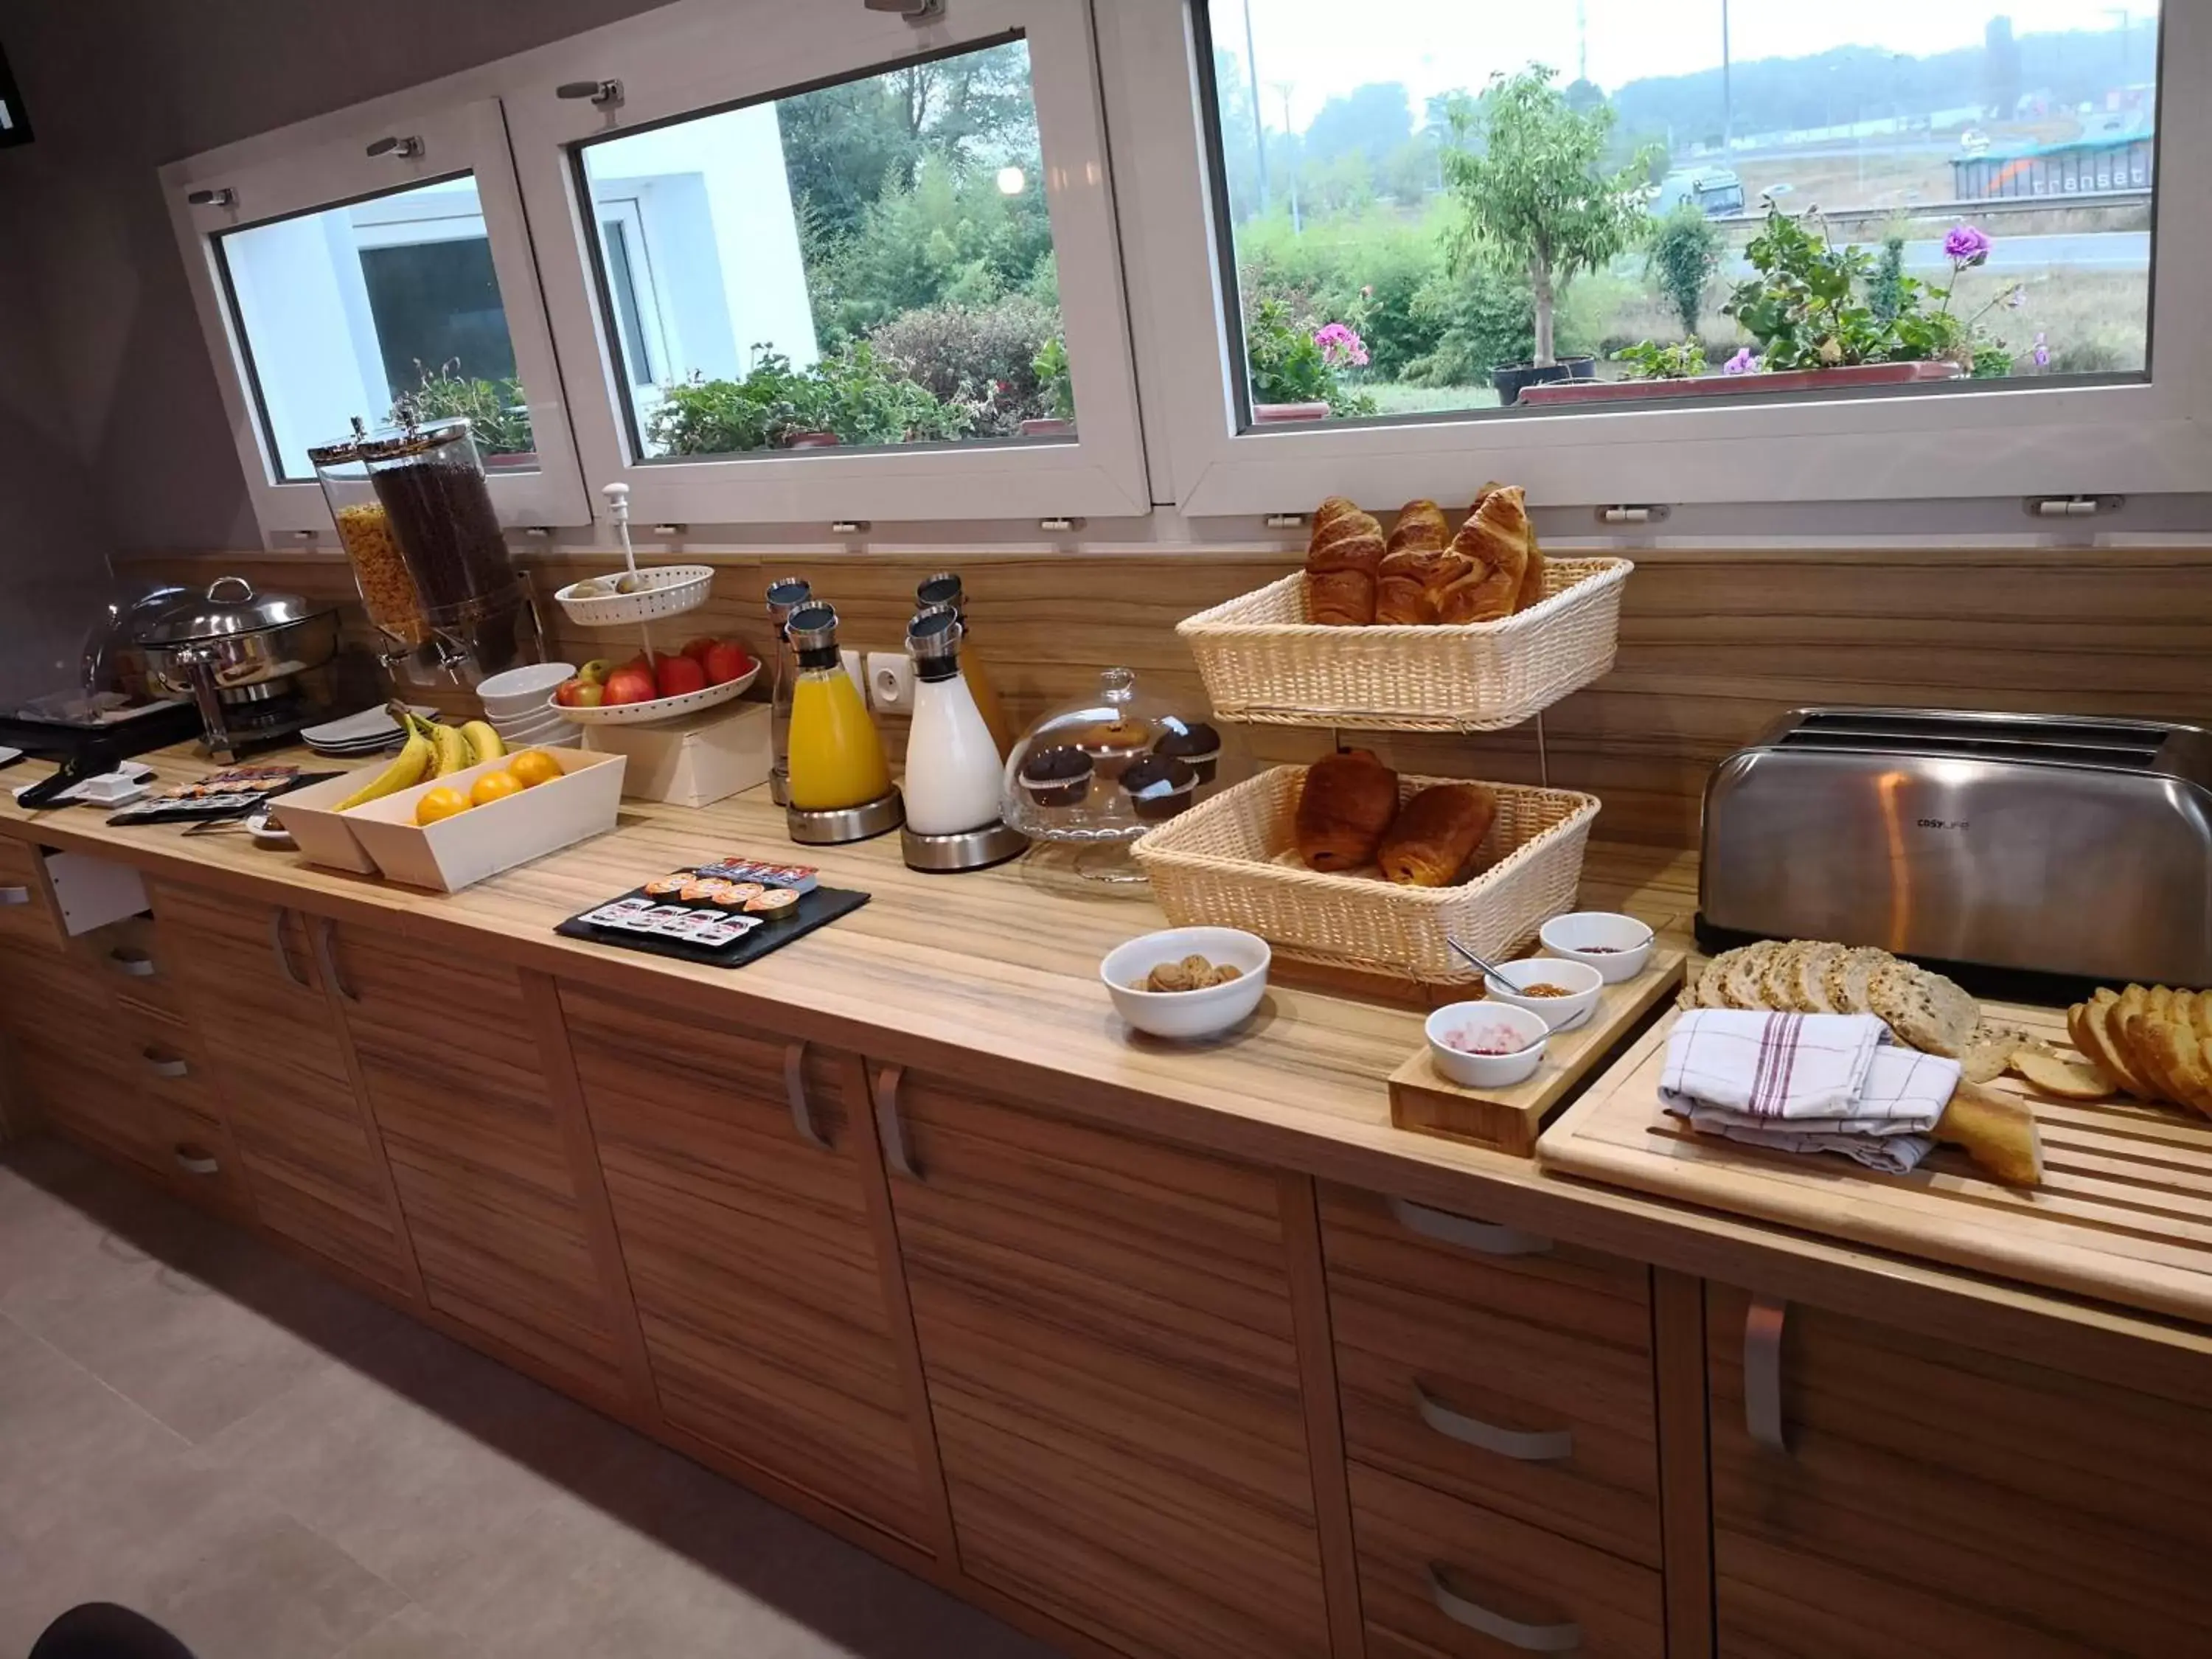 Buffet breakfast in Best Hotel Bordeaux Sud